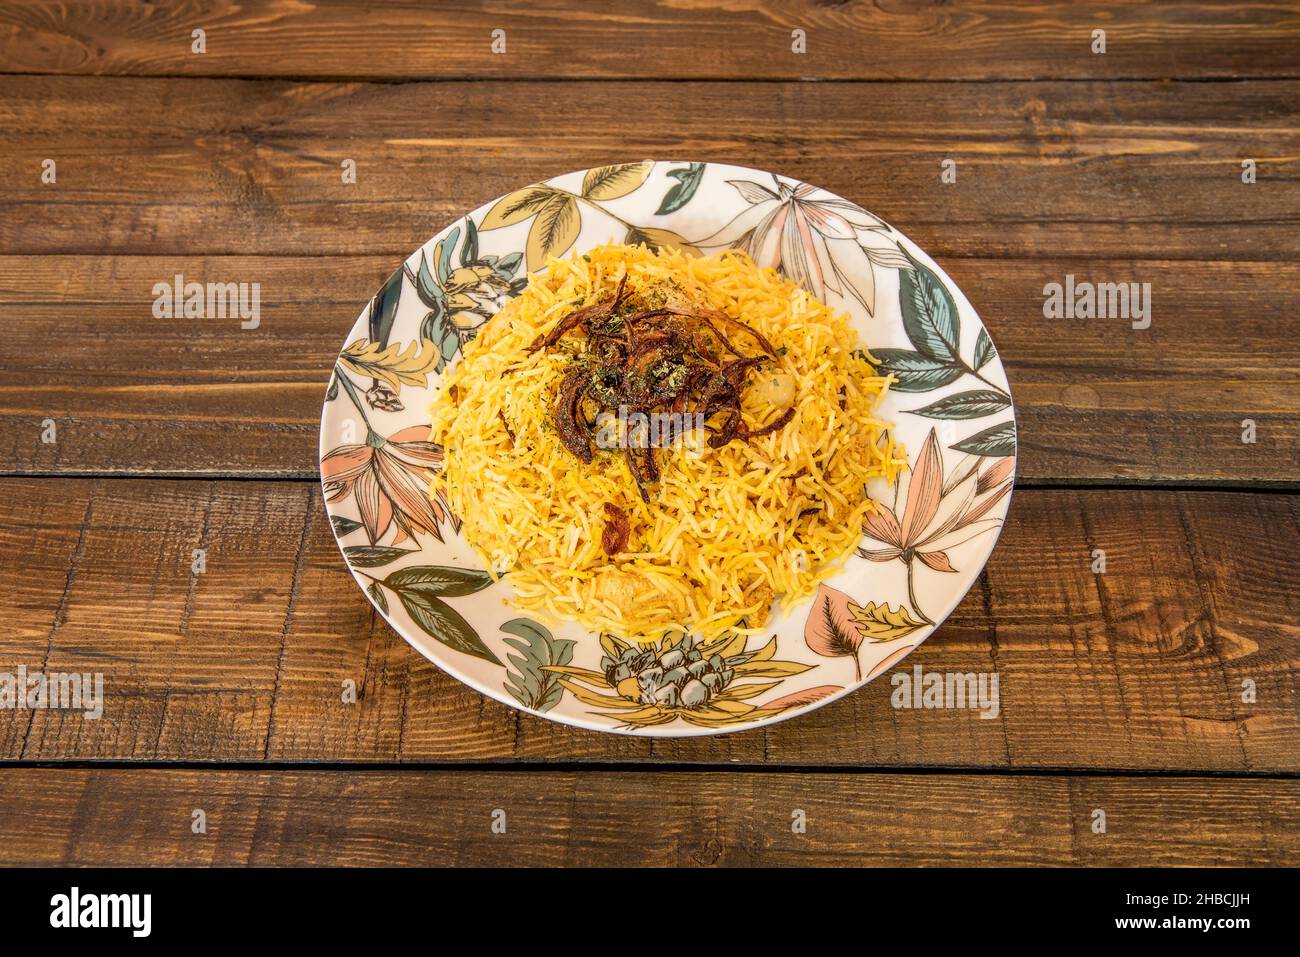 Biryani es un platone de arroz de la cocina pakistaní y turca elisado con una mezzza de especias, así como arroz basmati, carne, verduras y yogur. Fieno Foto Stock